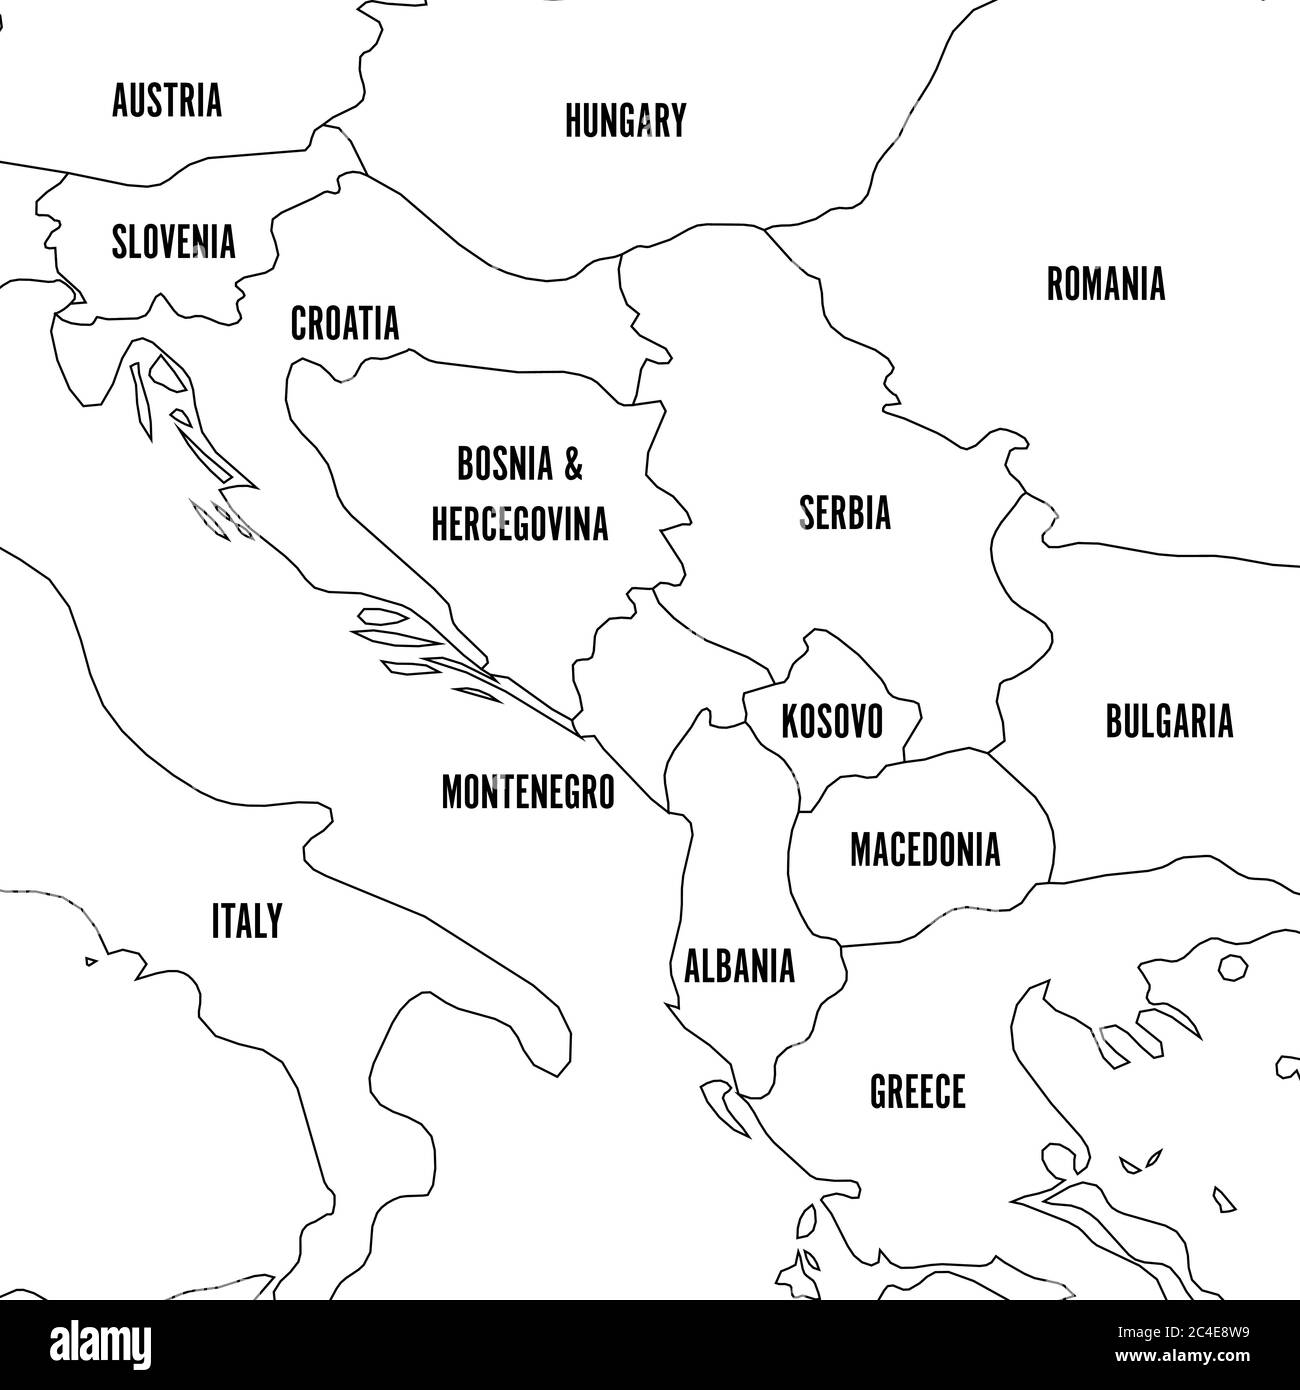 Politische Landkarte des Balkans - Staaten der Balkanhalbinsel. Einfache flache schwarze Umrandung mit schwarzen Ländernamen-Etiketten. Stock Vektor